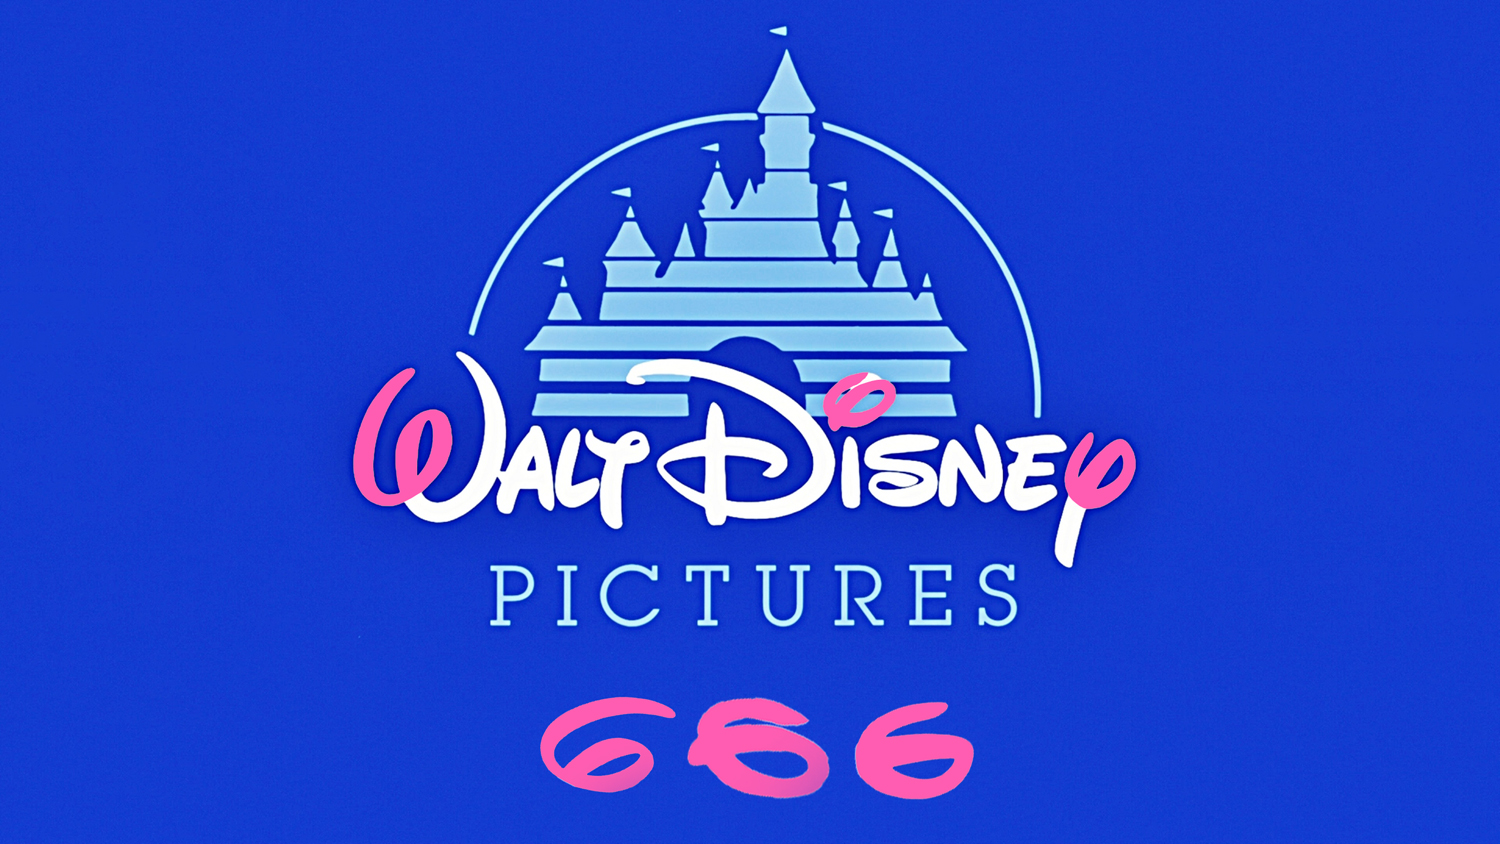 Walt Disney 666 Illuminati Logo